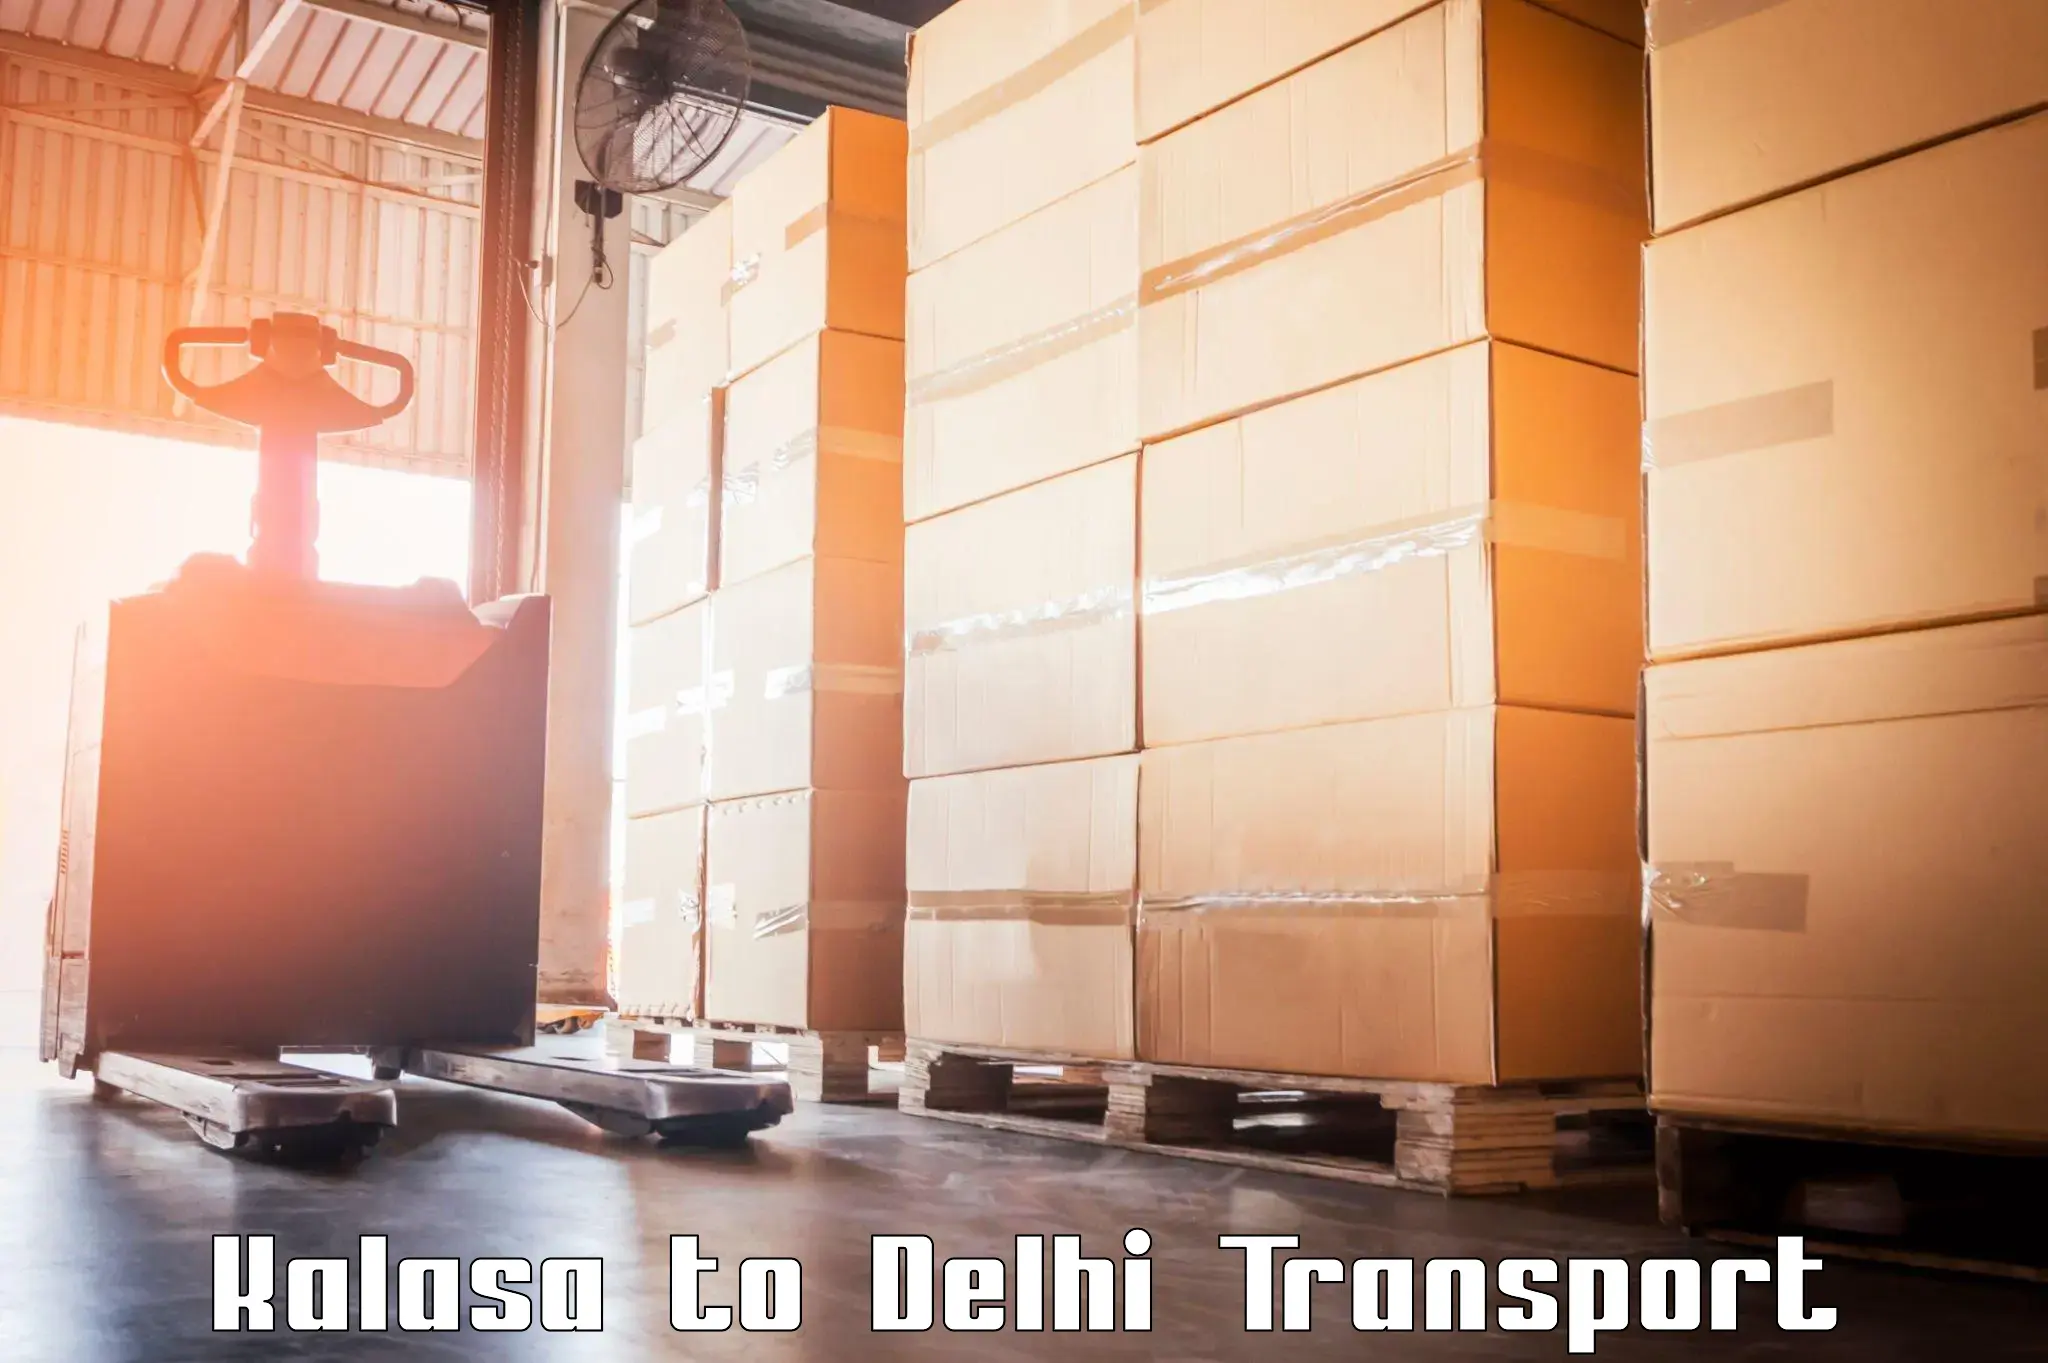 Daily transport service Kalasa to Delhi